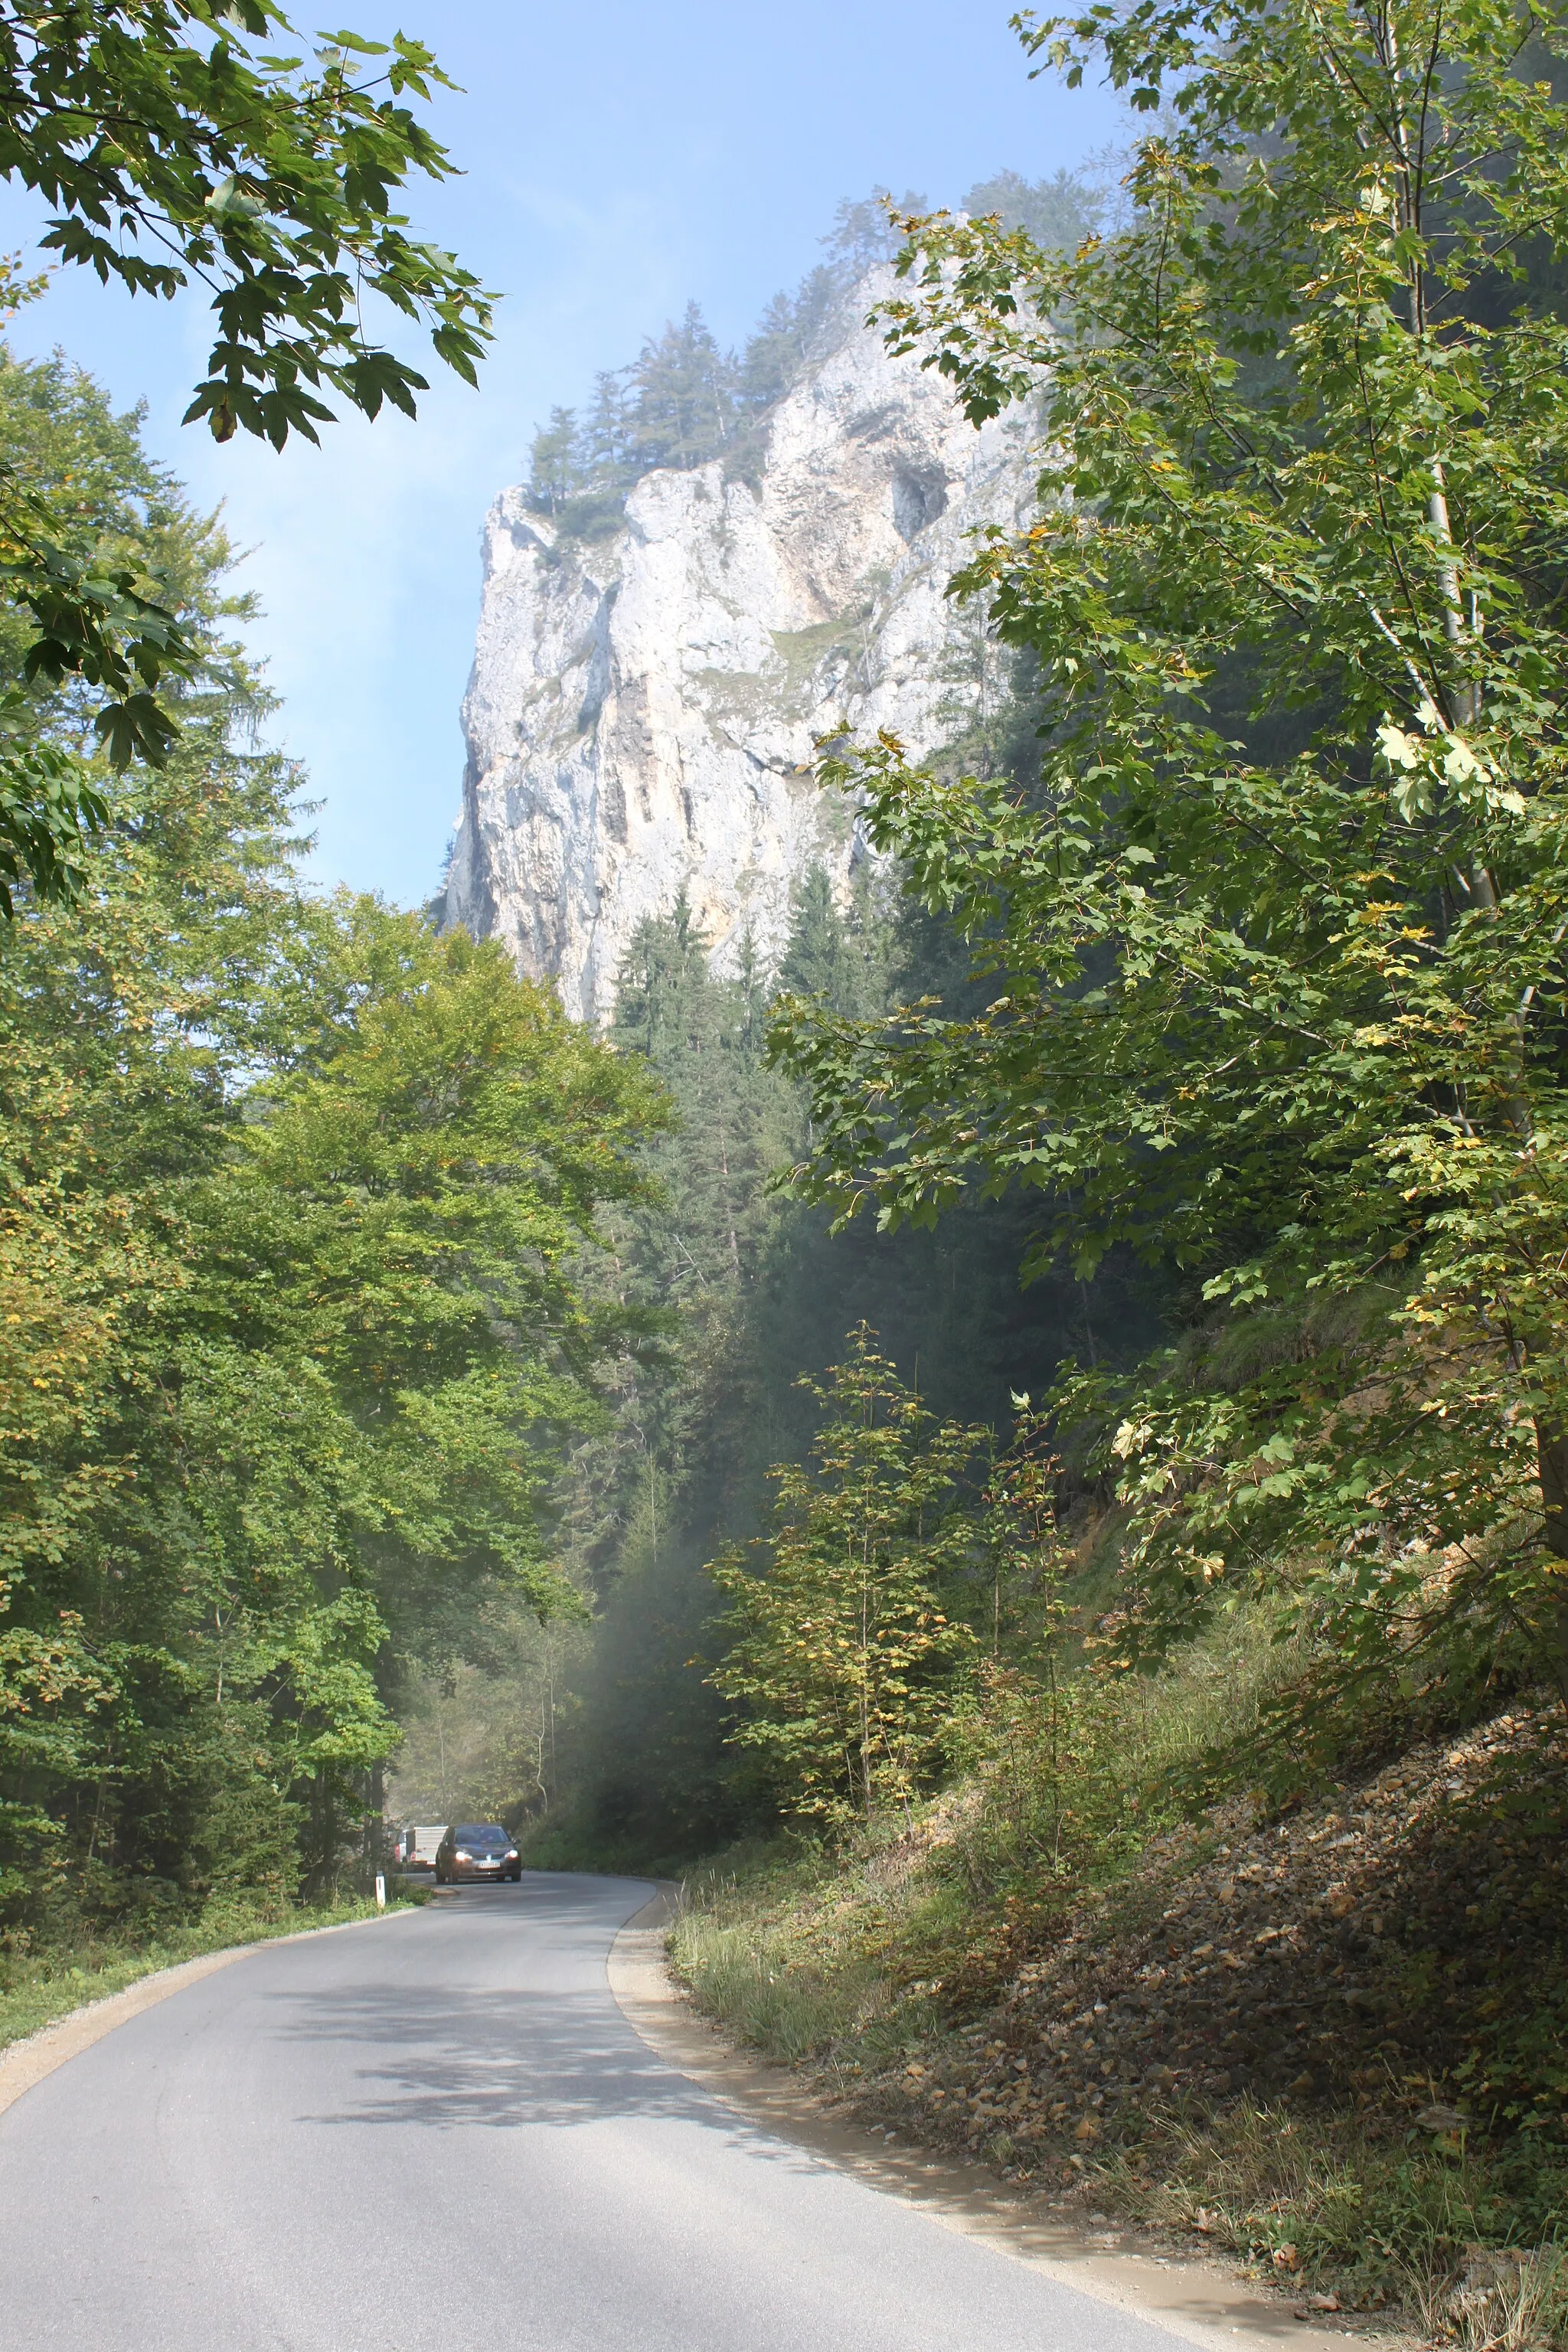 Photo showing: Raabklamm, Ansicht der Wand des Berges Gösser (1034m) am Raabtalradweg R11 zwischen Passail (Blickrichtung Passail) und Dürntal (Gemeinde Naas); Gemeindegebiet des Straßenabschnittes fraglich, könnte auch Arzberg (Steiermark) sein